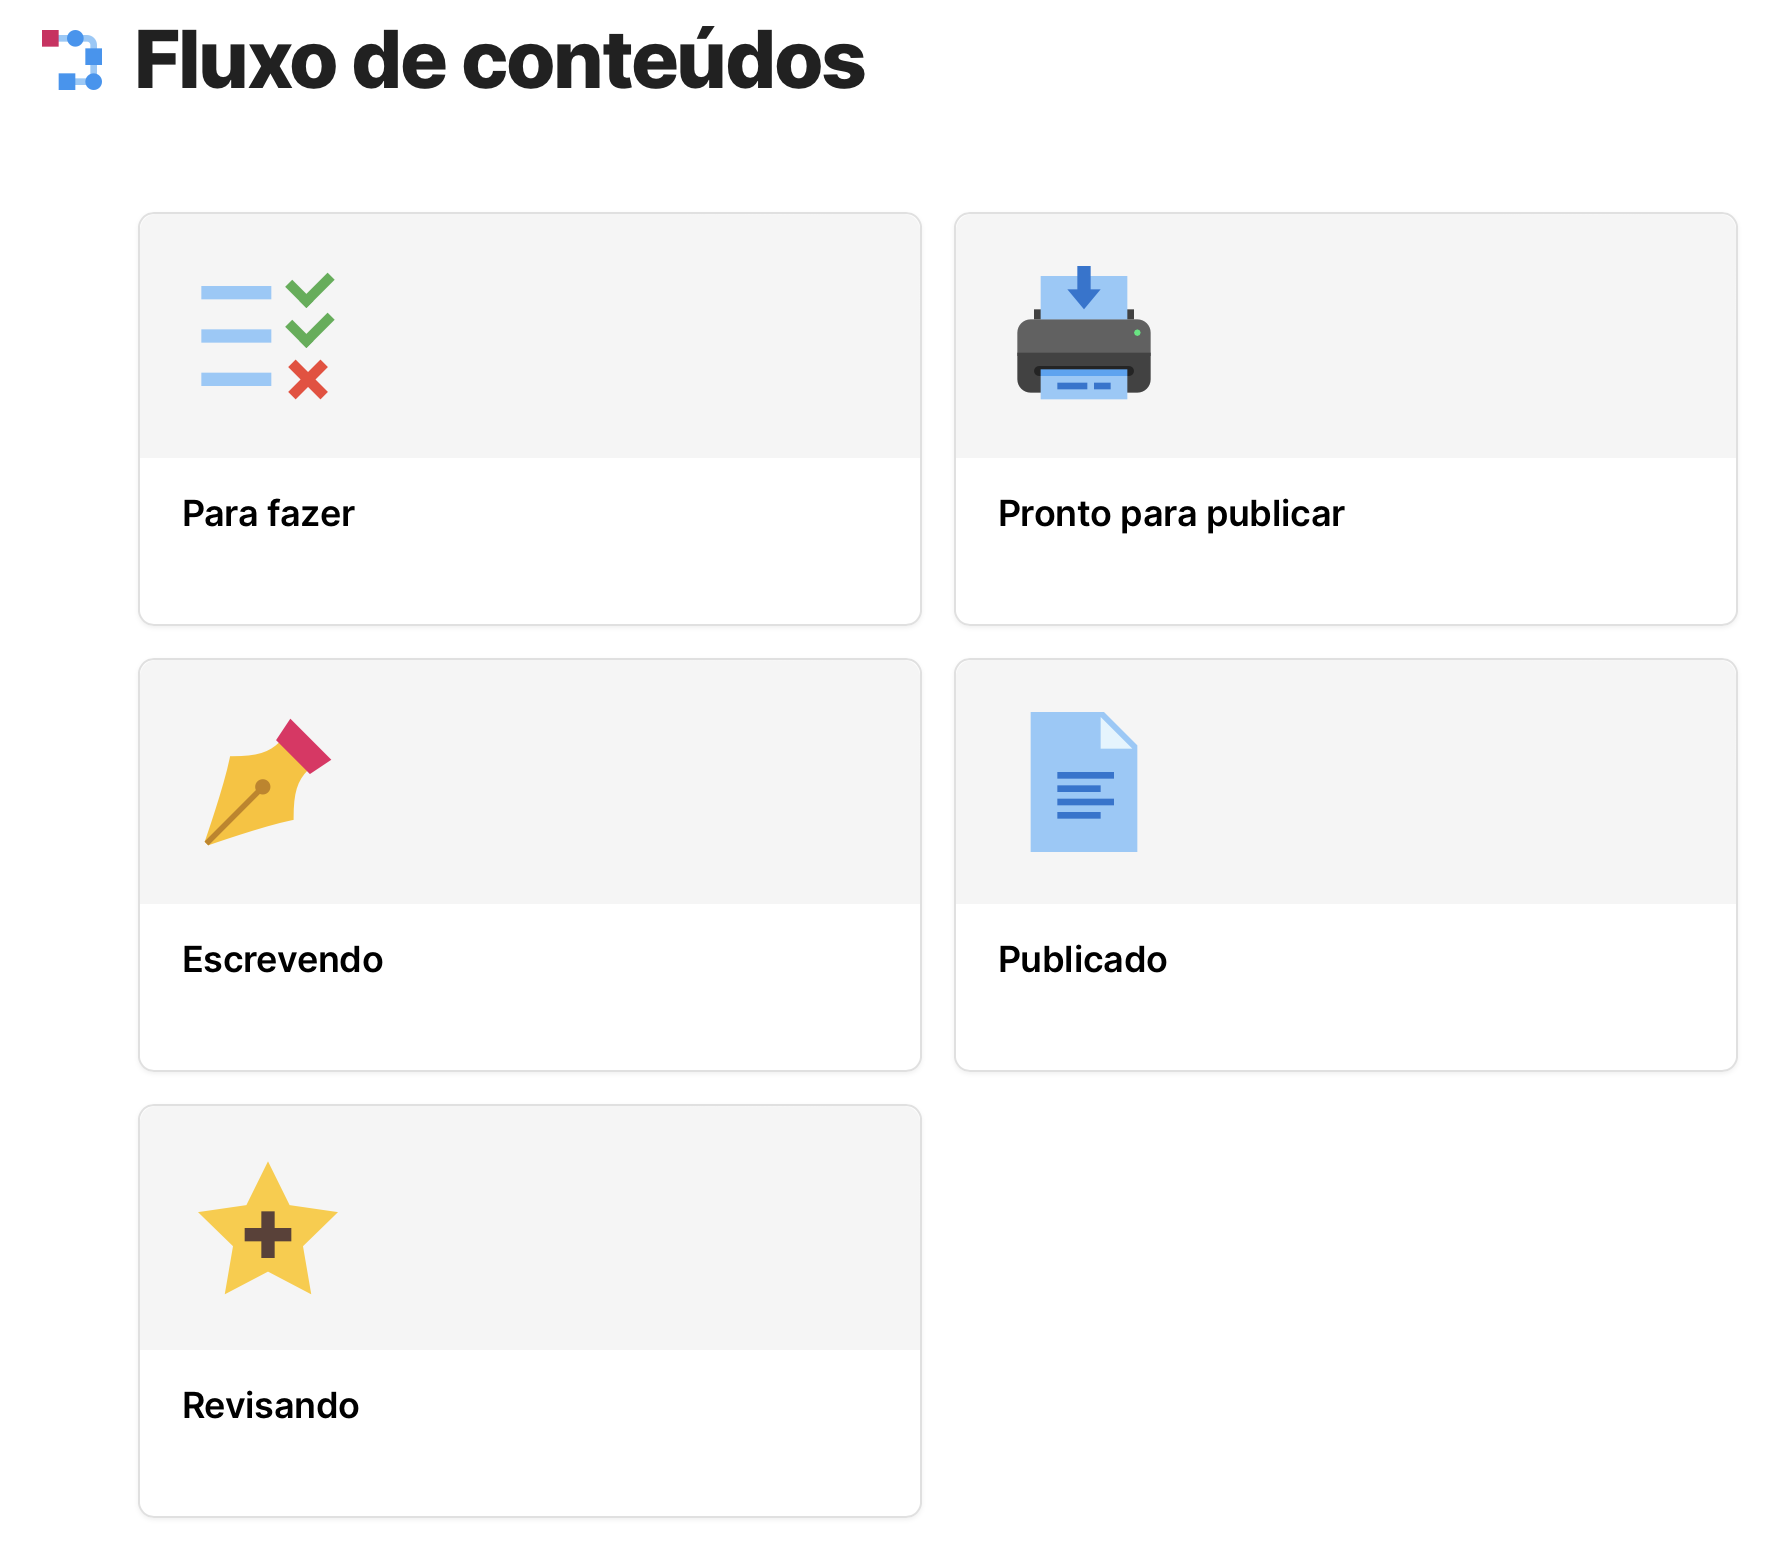 Print da página "Fluxo de conteúdos" exibindo os ícones de todas as subpáginas com os status do fluxo